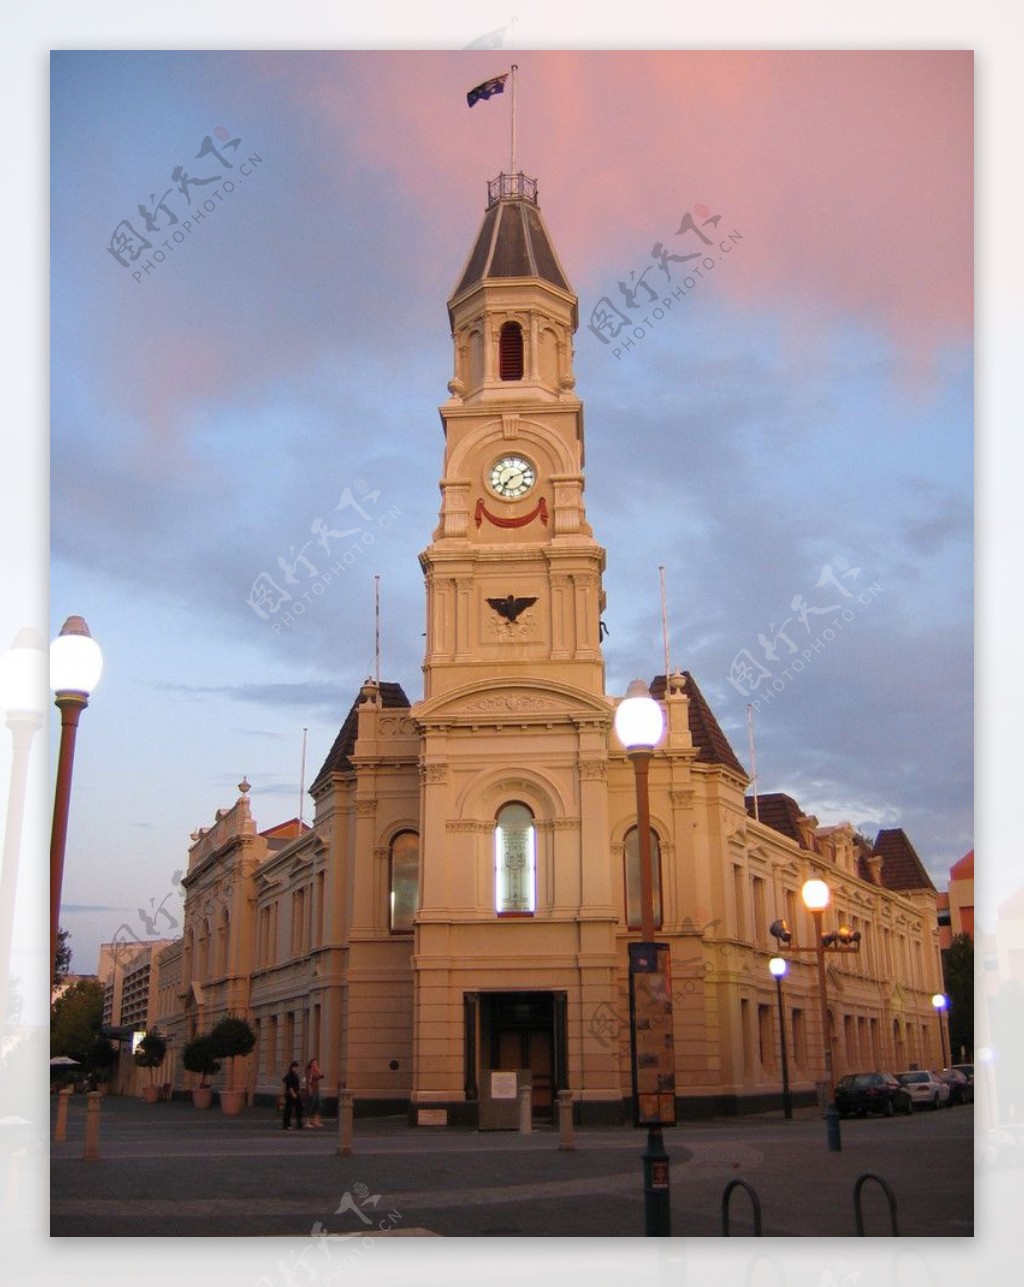 欧洲传统建筑古典钟楼街道小镇暖调路灯街灯图片